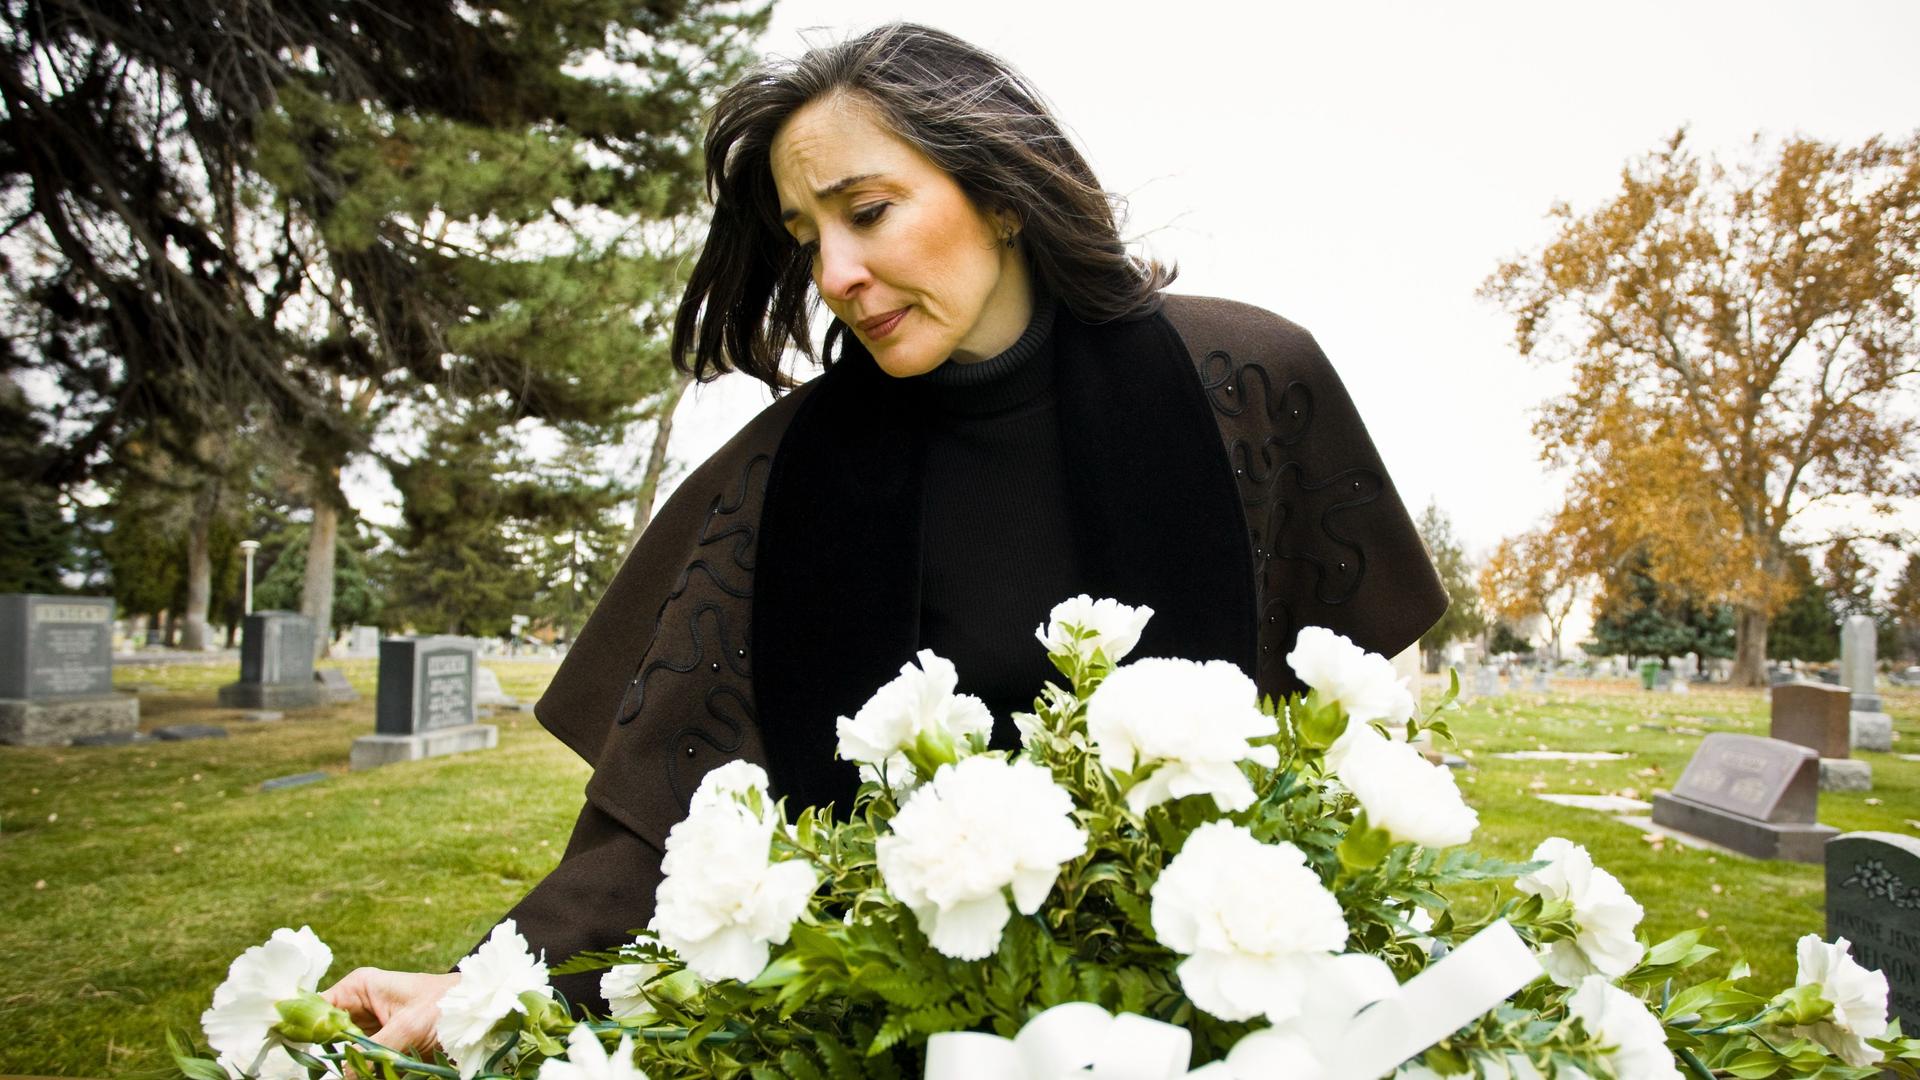 Eine Frau trauert an einem frischen Grab, das mit weißen Blumen geschmückt ist